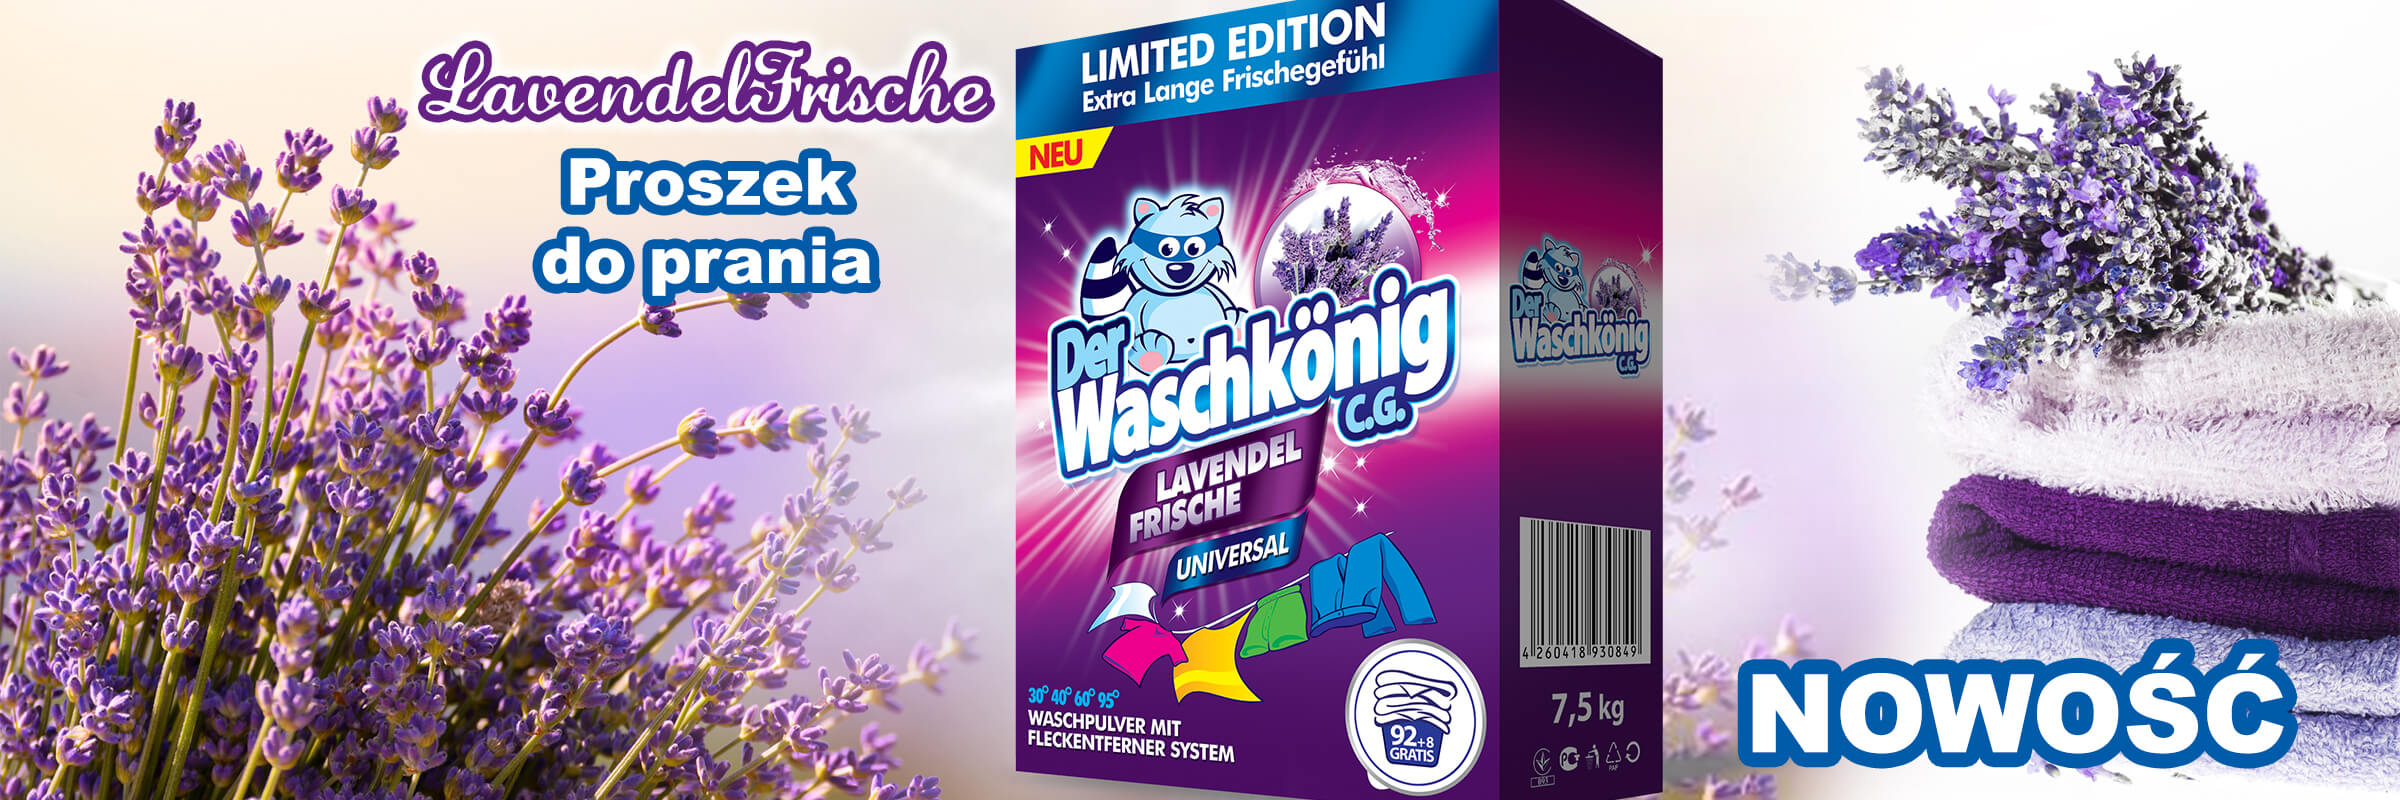 Proszek do prania Waschkonig Lavendel Frische Universal 7,5 kg - 100 WL Limited Edition